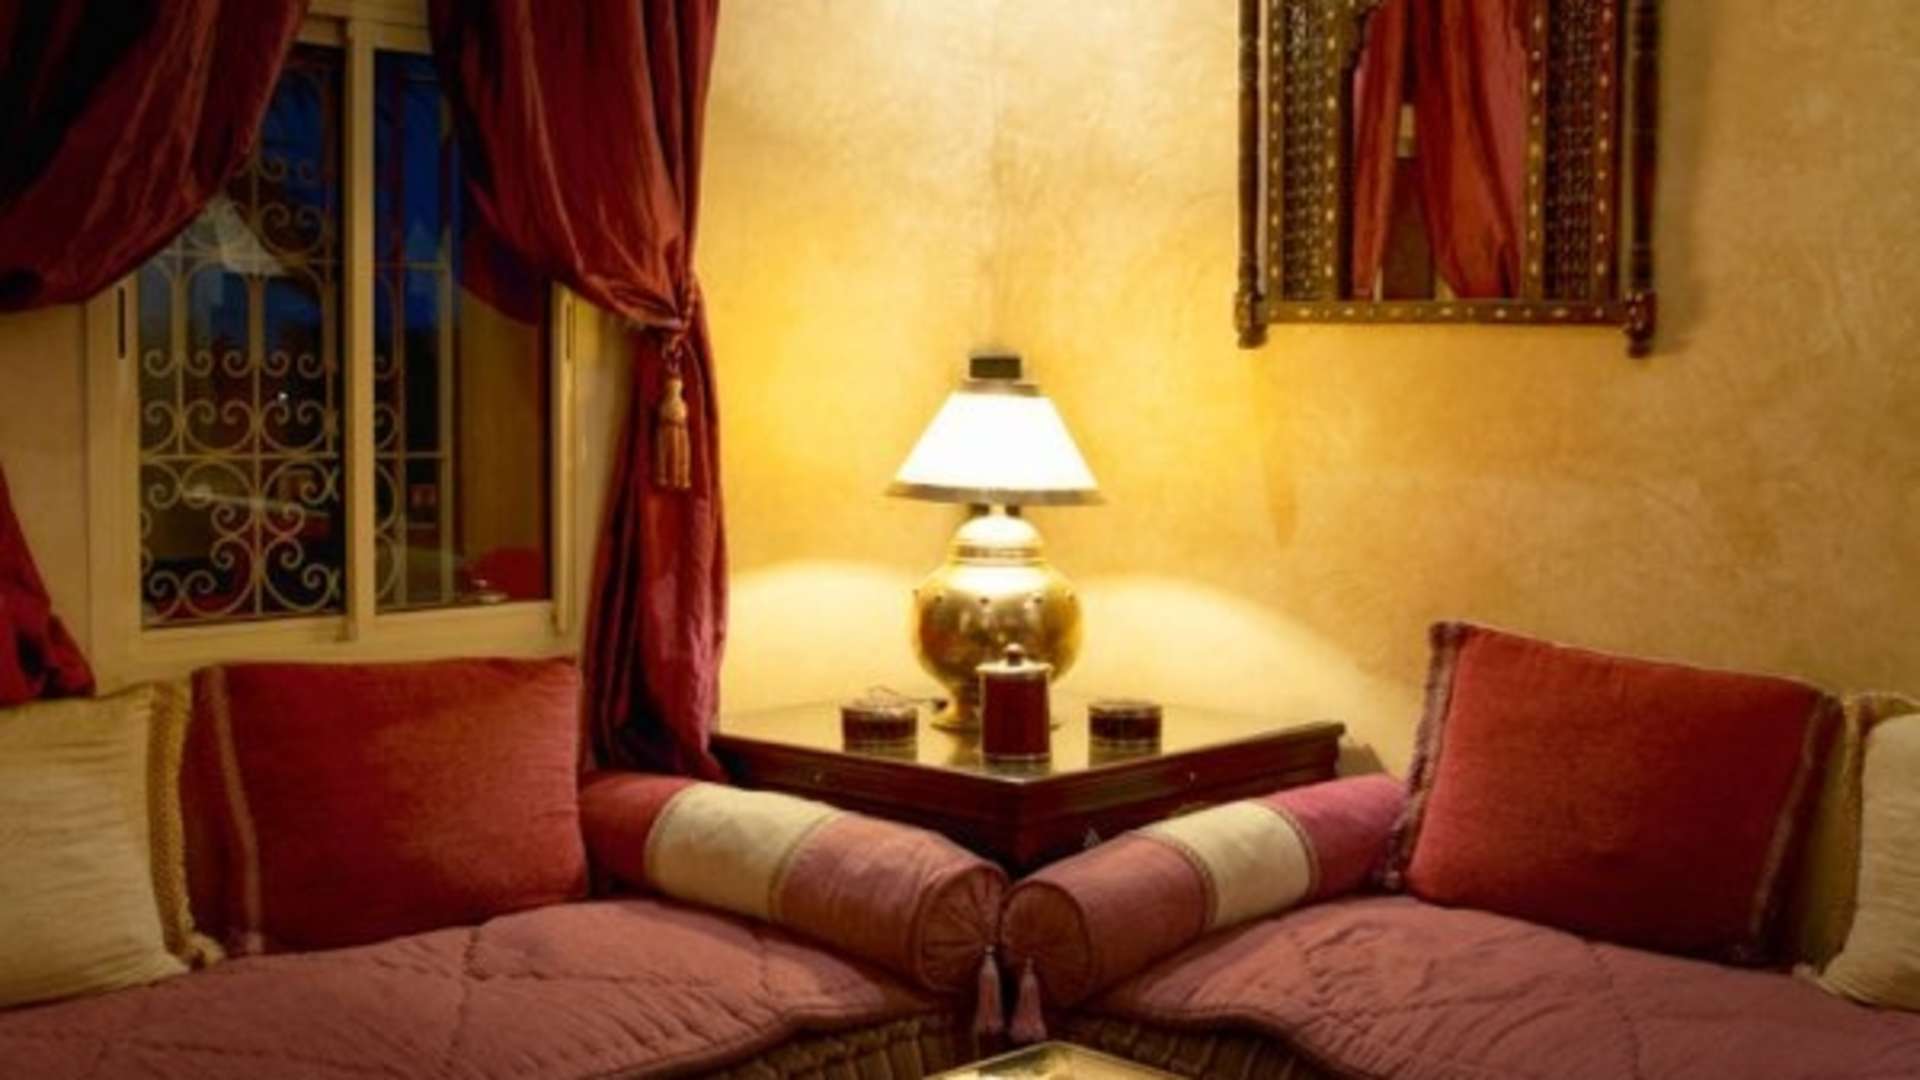 Location de vacances,Villa,Luxueuse villa d’environ 500 m², dans un parc privé d'1Ha avec piscine 8 personnes,Marrakech,Tamazouzte